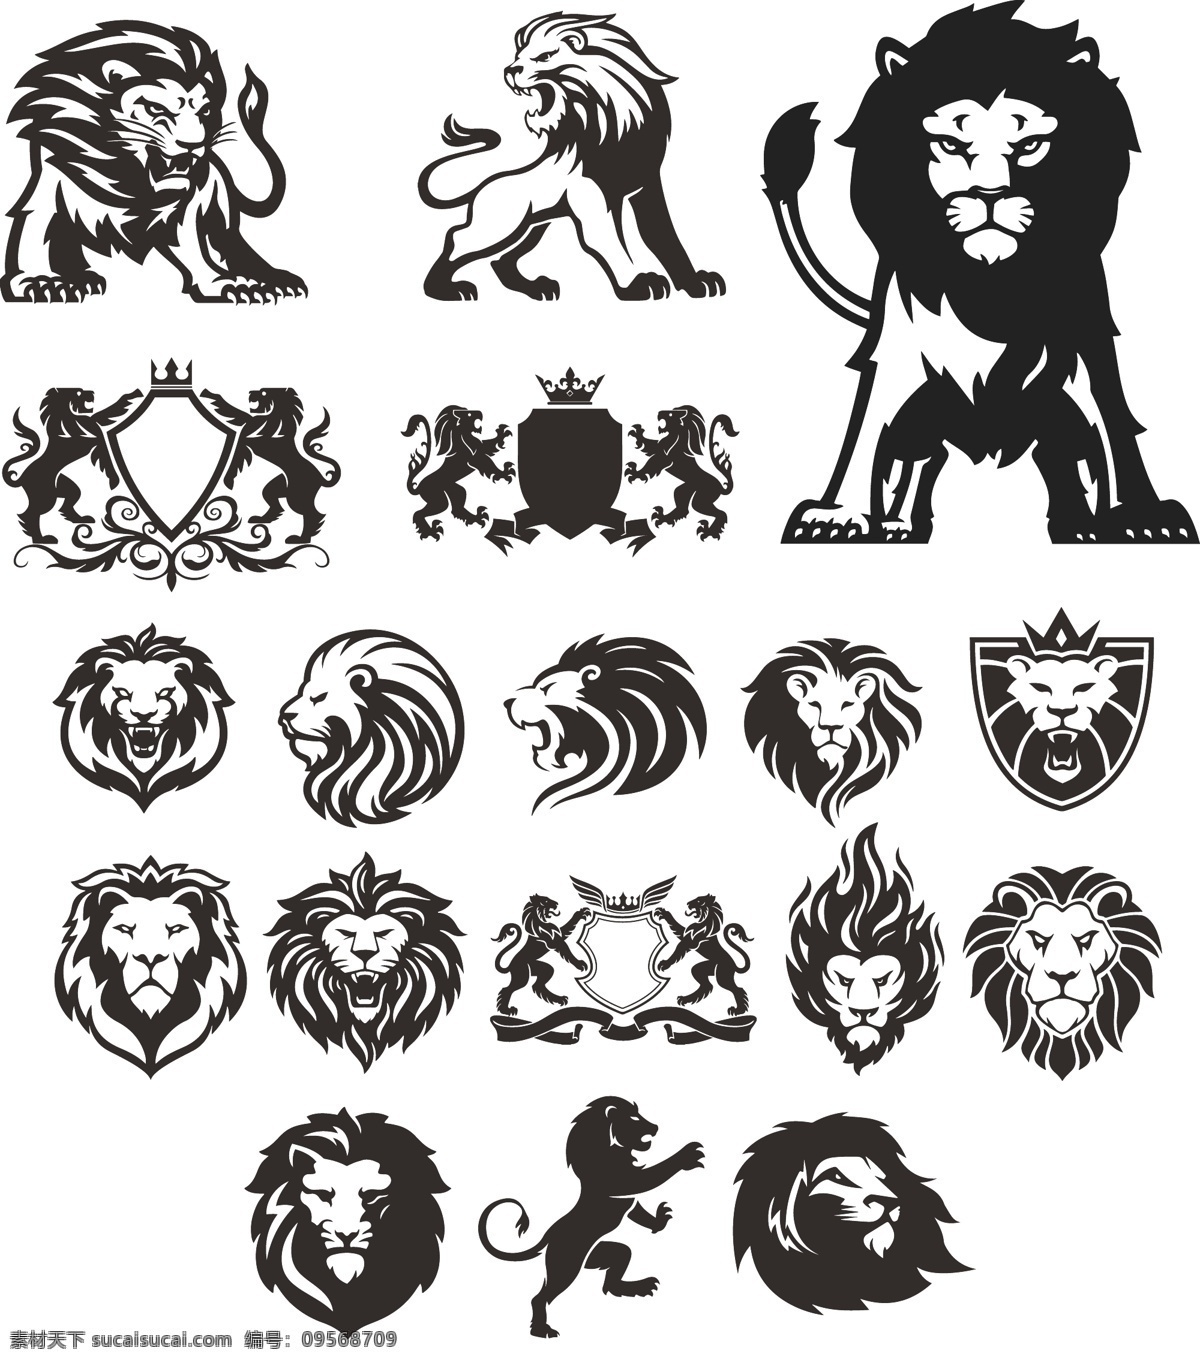 狮子logo 狮子标志 矢量图狮子 动物logo 动物标志 狮子头 贴纸图案 卡通动物 手绘动物 可爱卡通动物 小狮子 卡通狮子 狮子王 t恤印花图案 服装设计 手绘狮子 狮子头矢量图 狮子头图案 logo logo设计